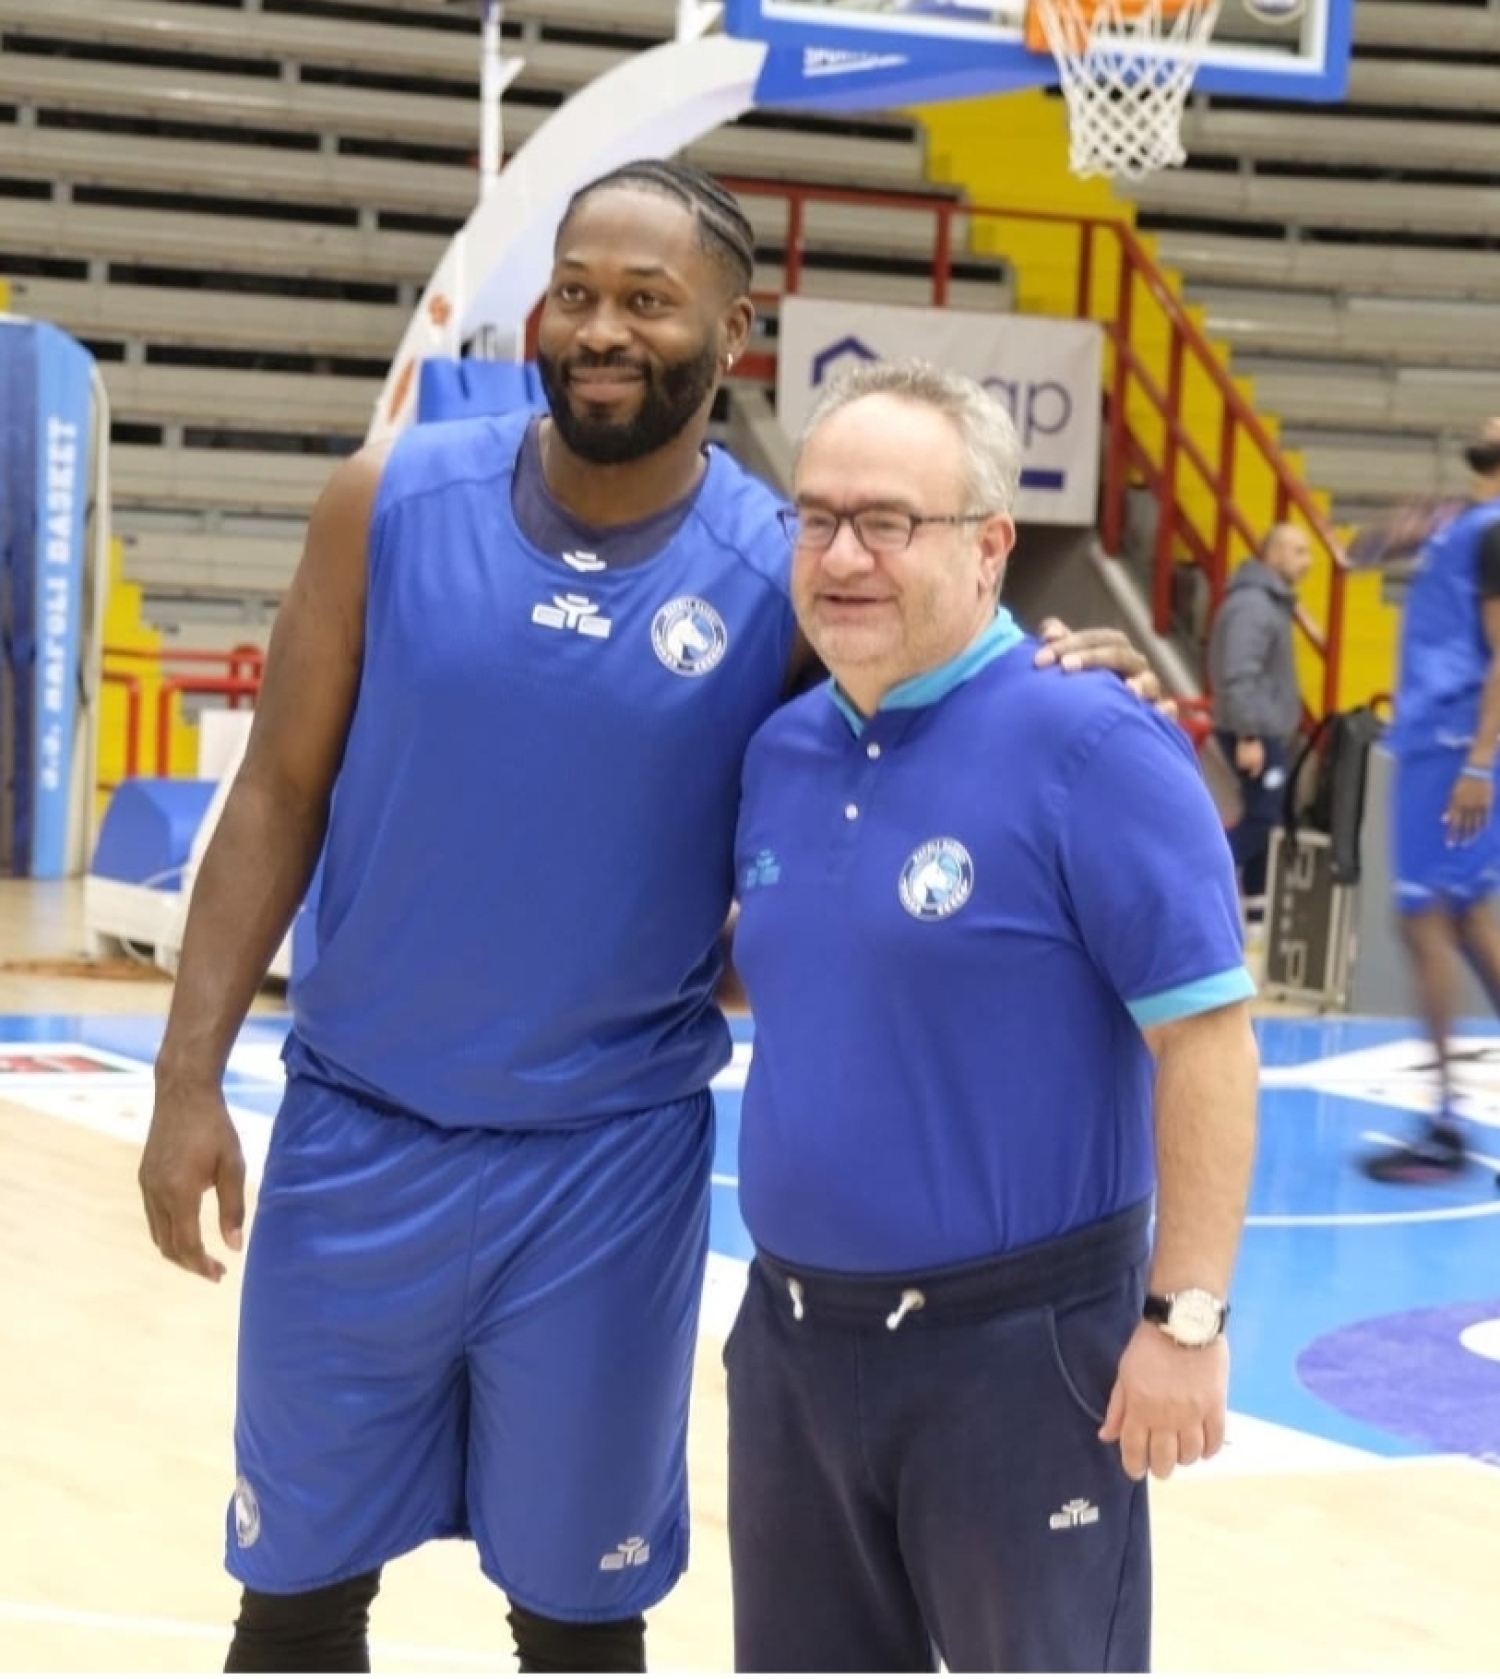 Gevi Napoli Basket, presentato Jeremy Pargo: " Sono entusiasta di essere a Napoli", Sacripanti : "Arriva un grande giocatore"